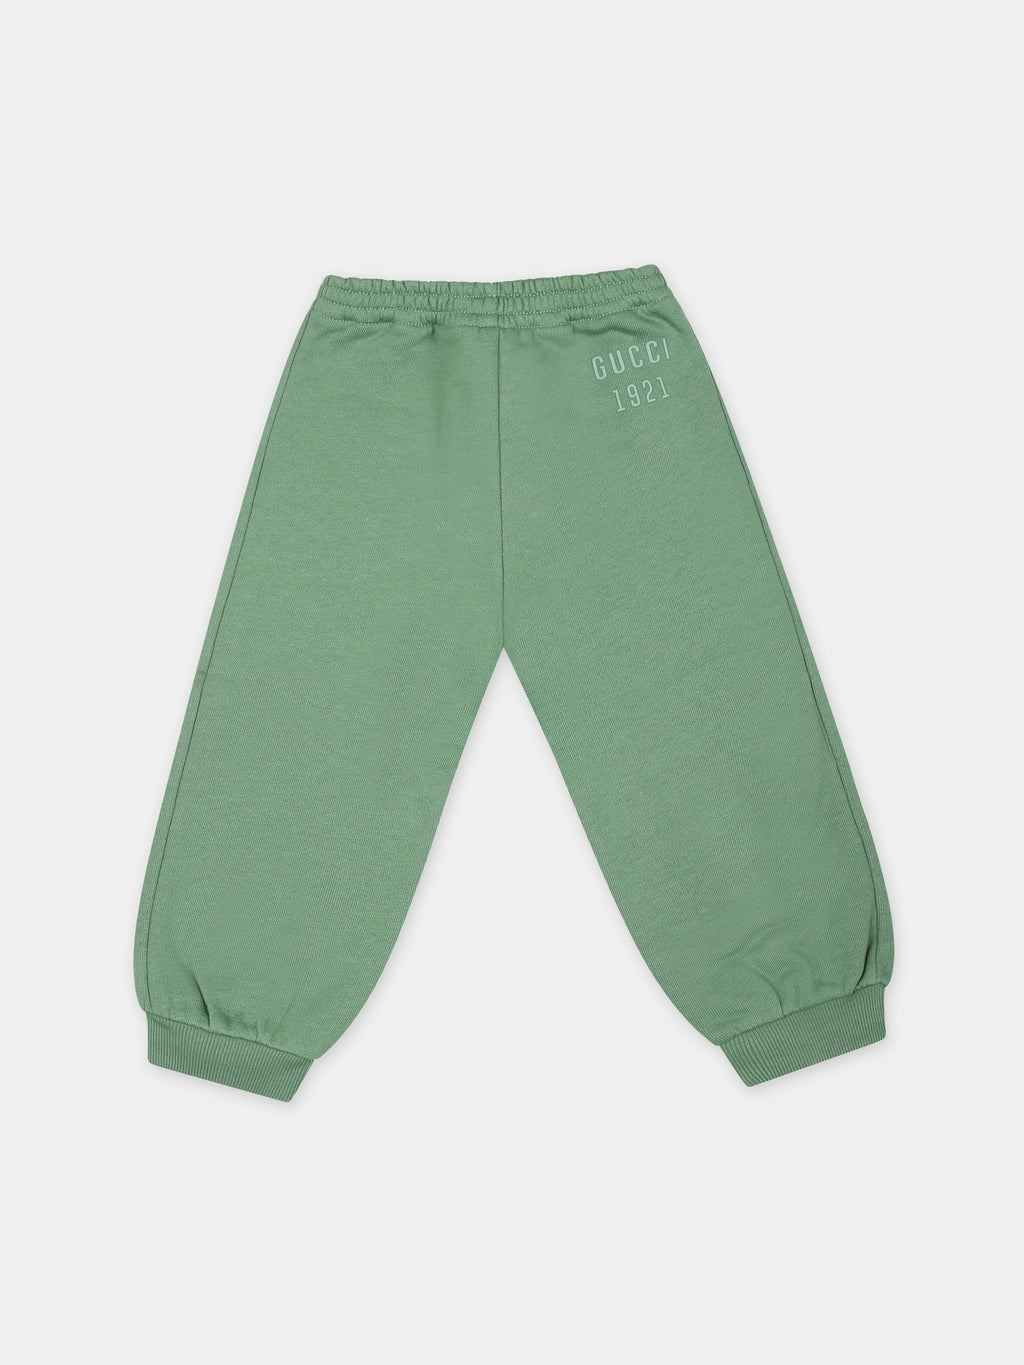 Pantaloni verdi per neonati con logo Gucci 1921